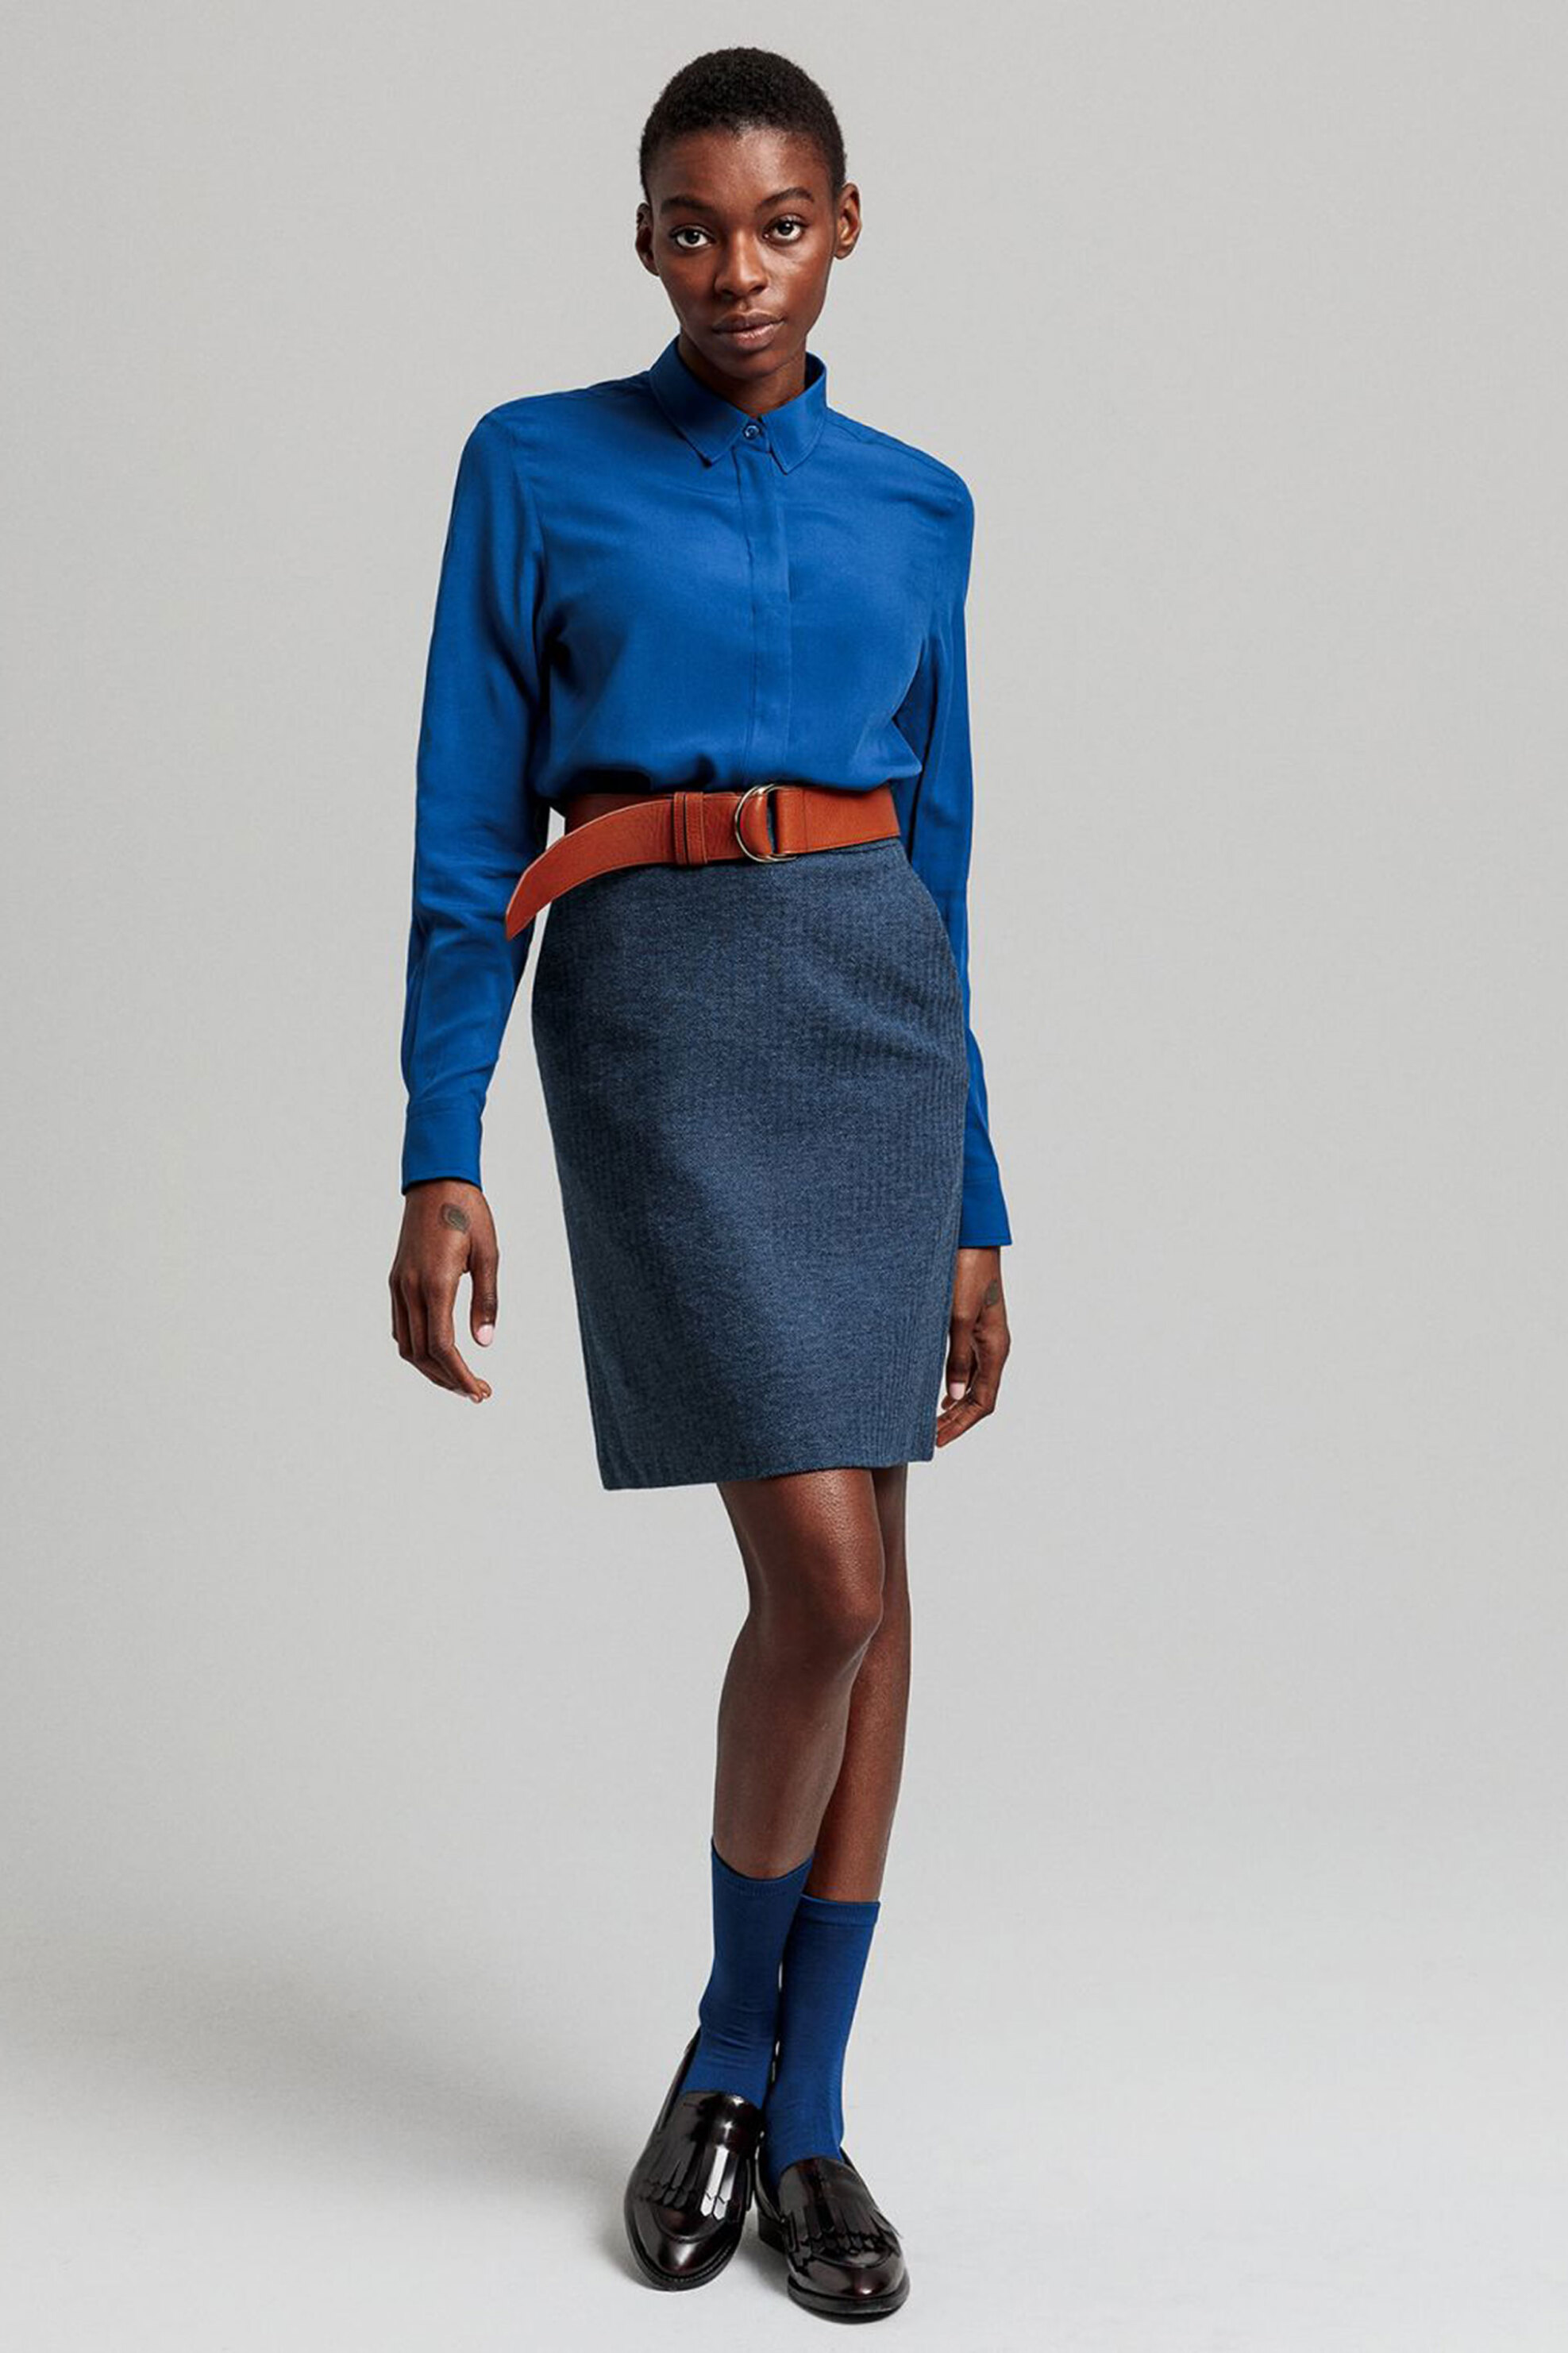 Γυναίκα > ΡΟΥΧΑ > Φούστες > Mini Gant γυναικεία mini φούστα με τσέπες "Ηerringbone" - 4400042 Μπλε Σκούρο